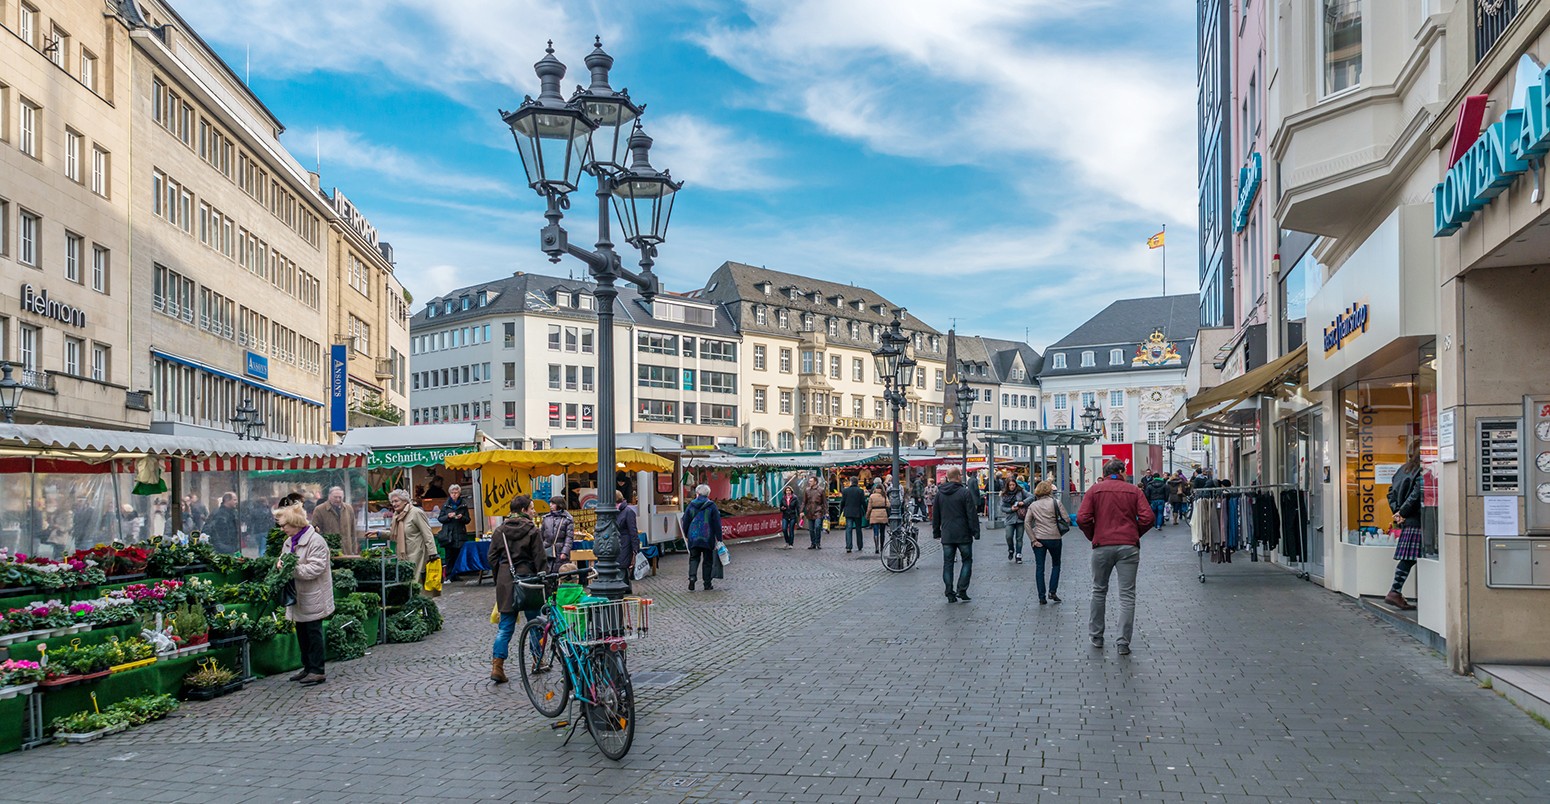 Shoppers in Bonn, Germany